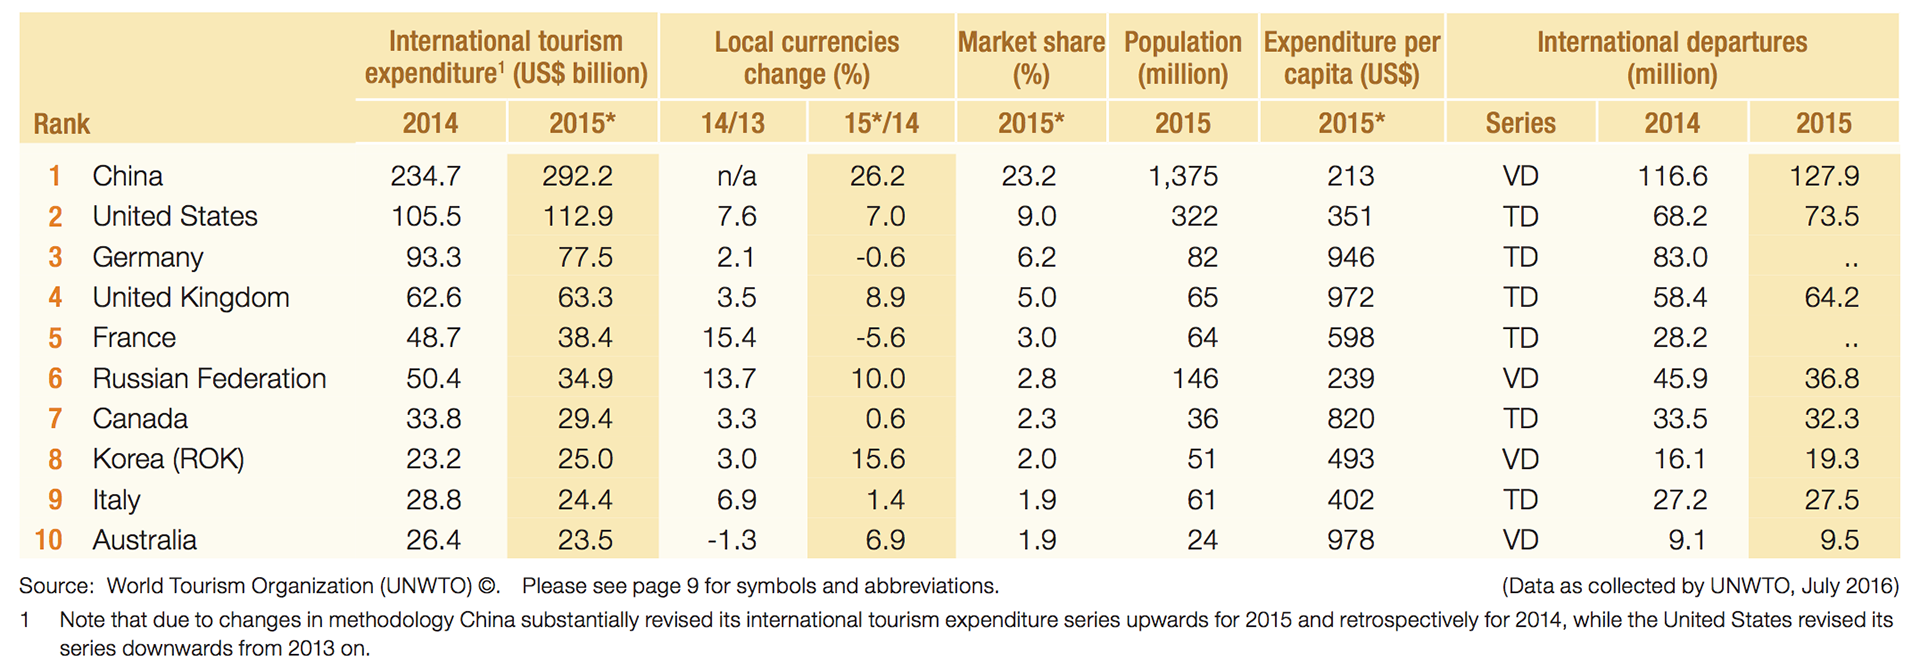 Den økonomiske verdien av internasjonal turisme